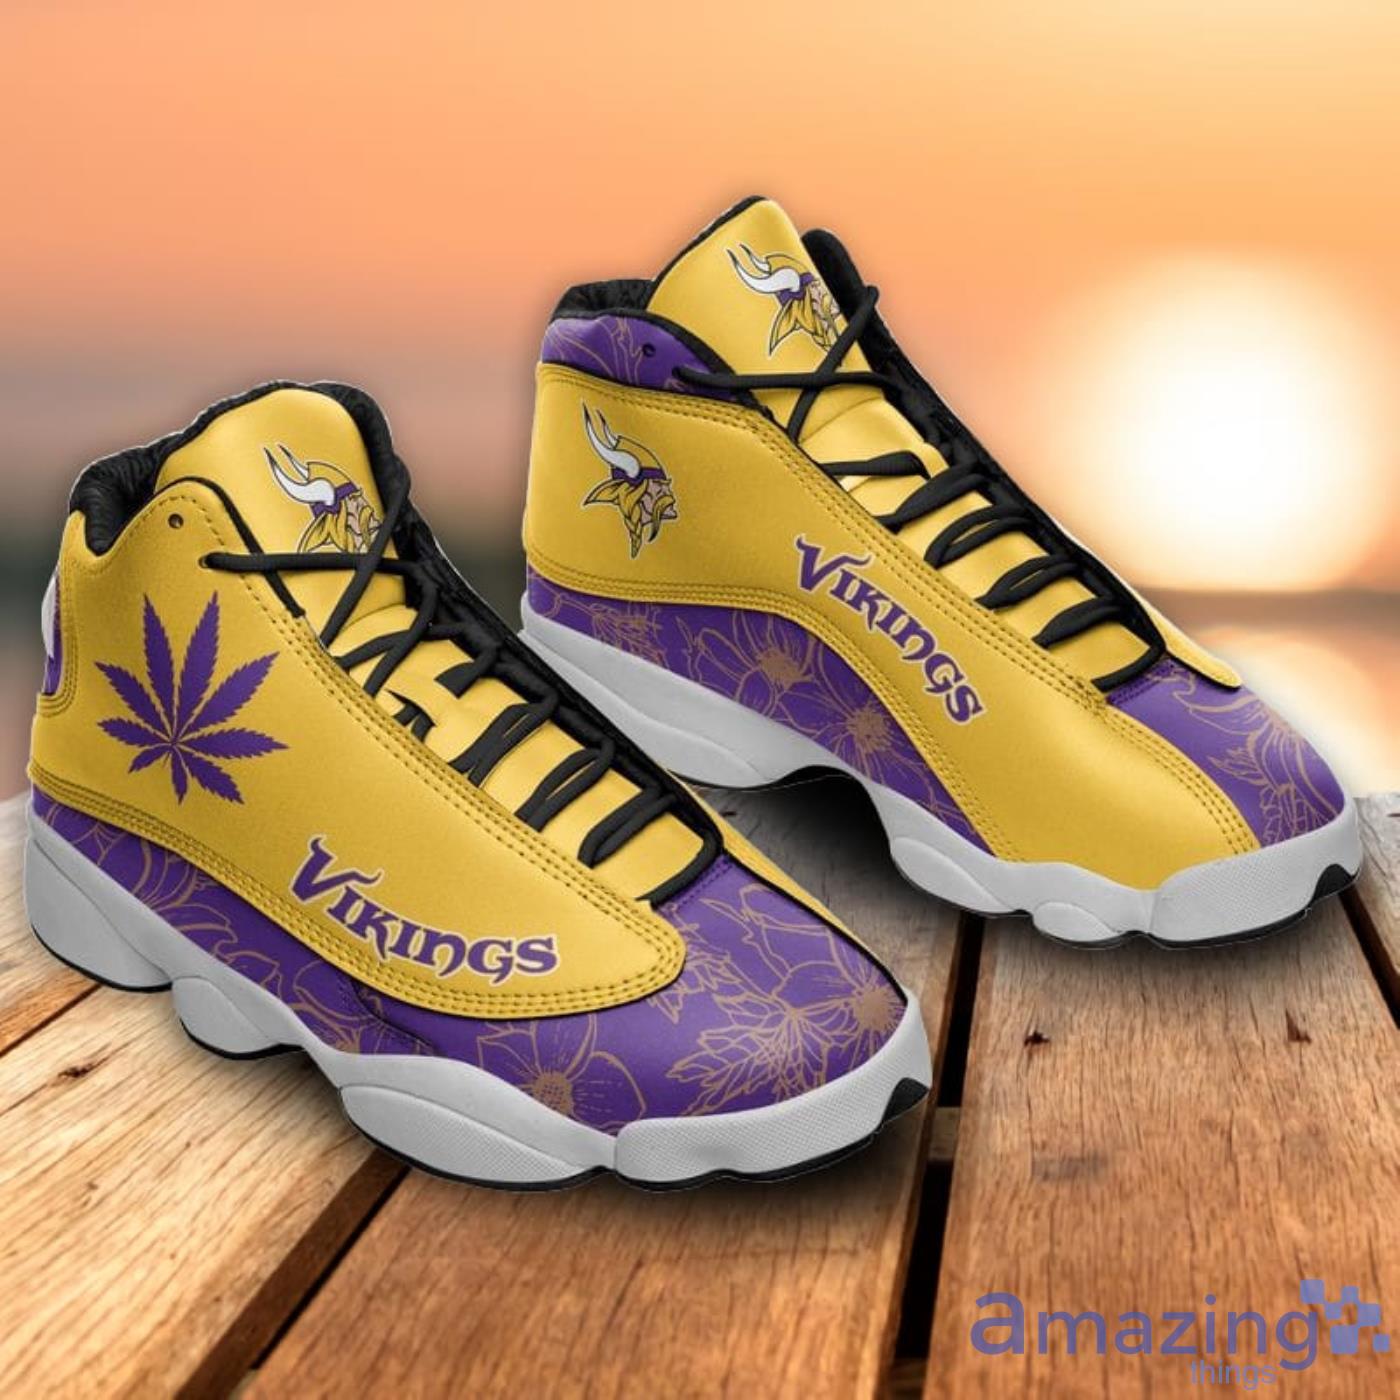 Minnesota Vikings Yellow And Black Air Jordan 13 Sneaker Shoes